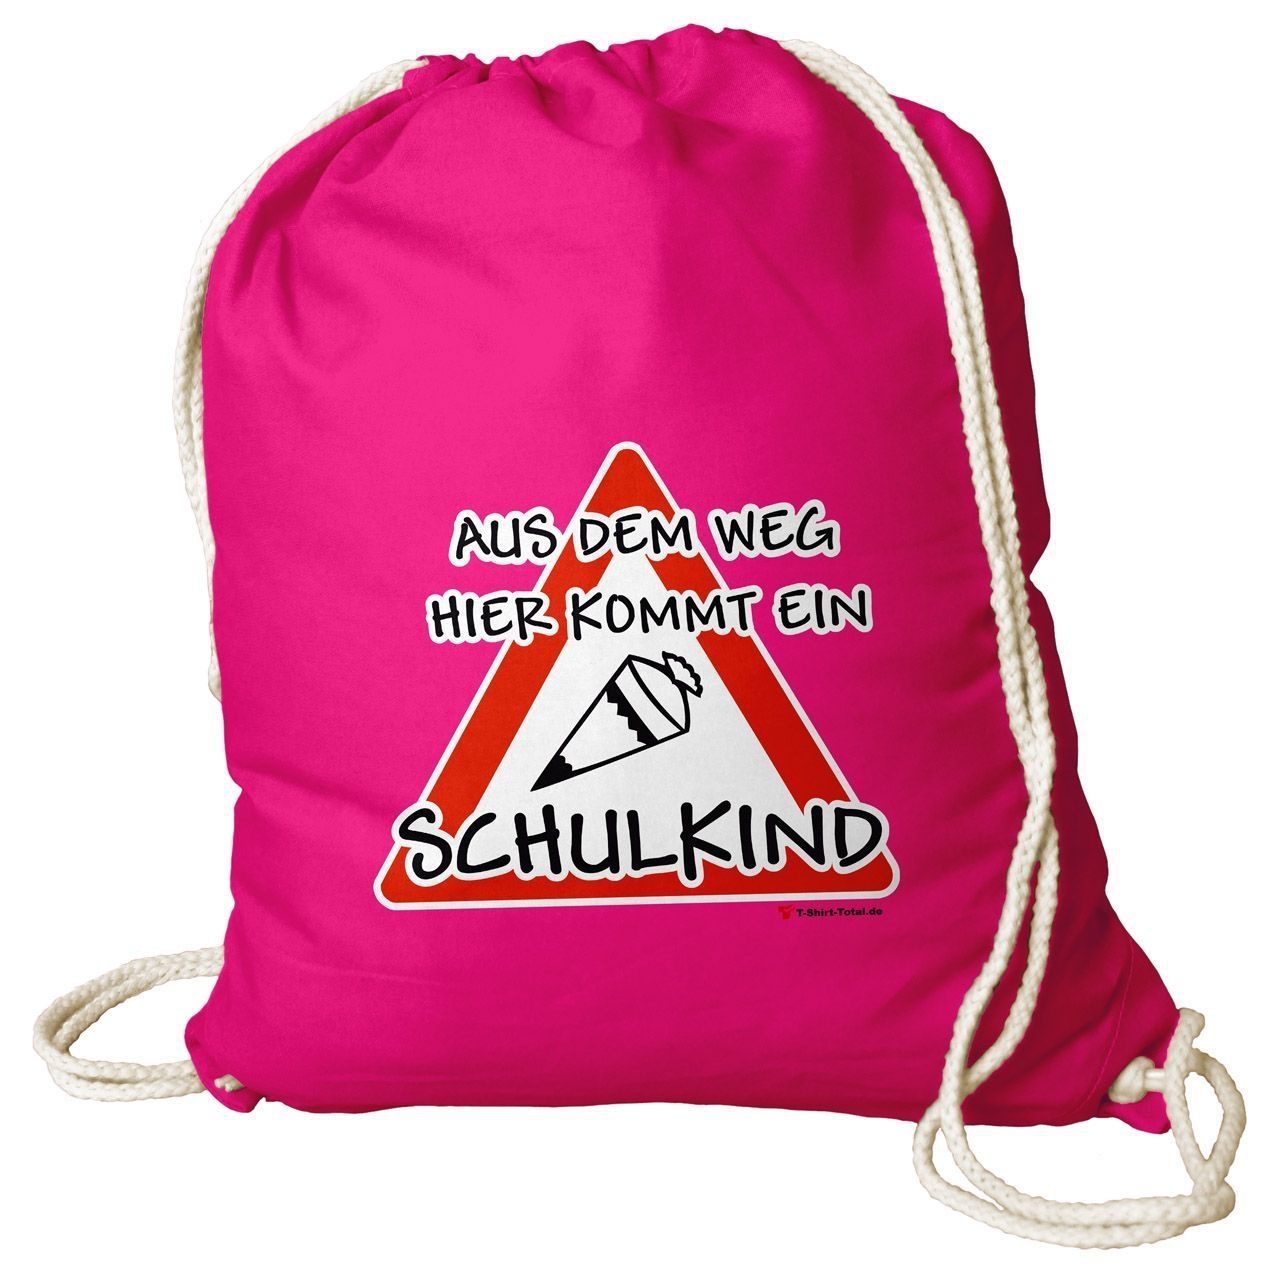 Kommt ein Schulkind Rucksack Beutel pink